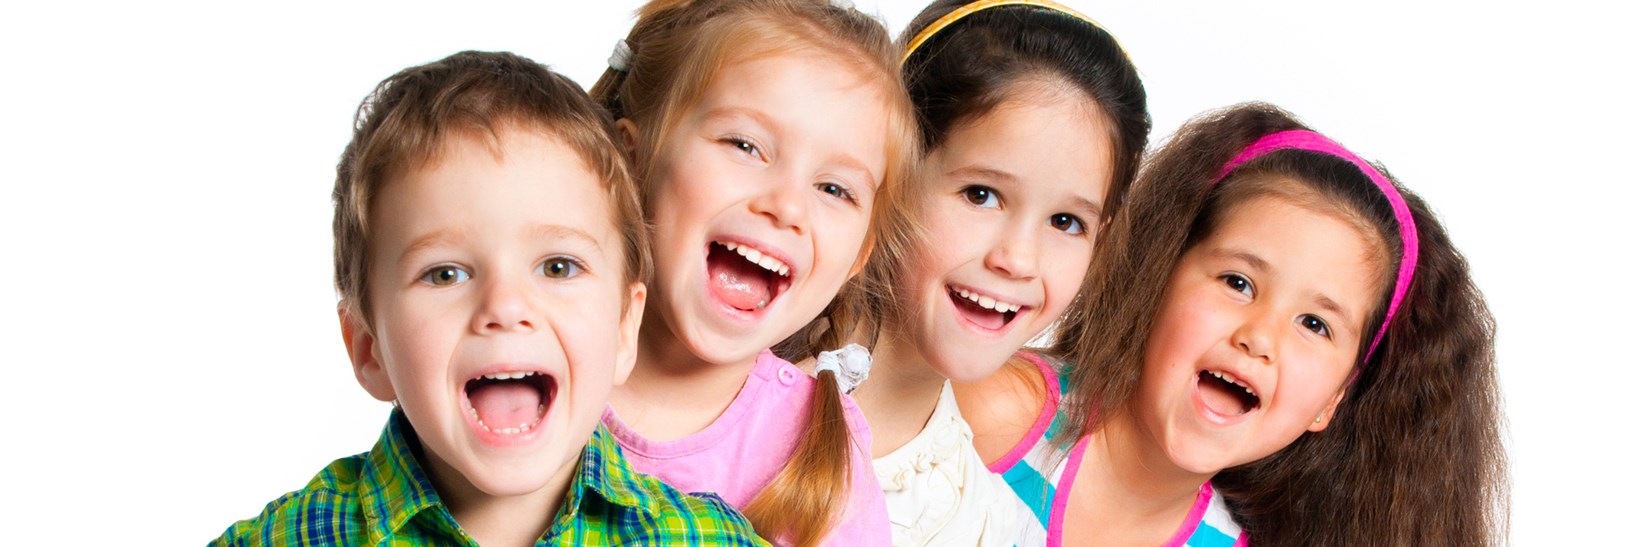 Four primary school children smiling